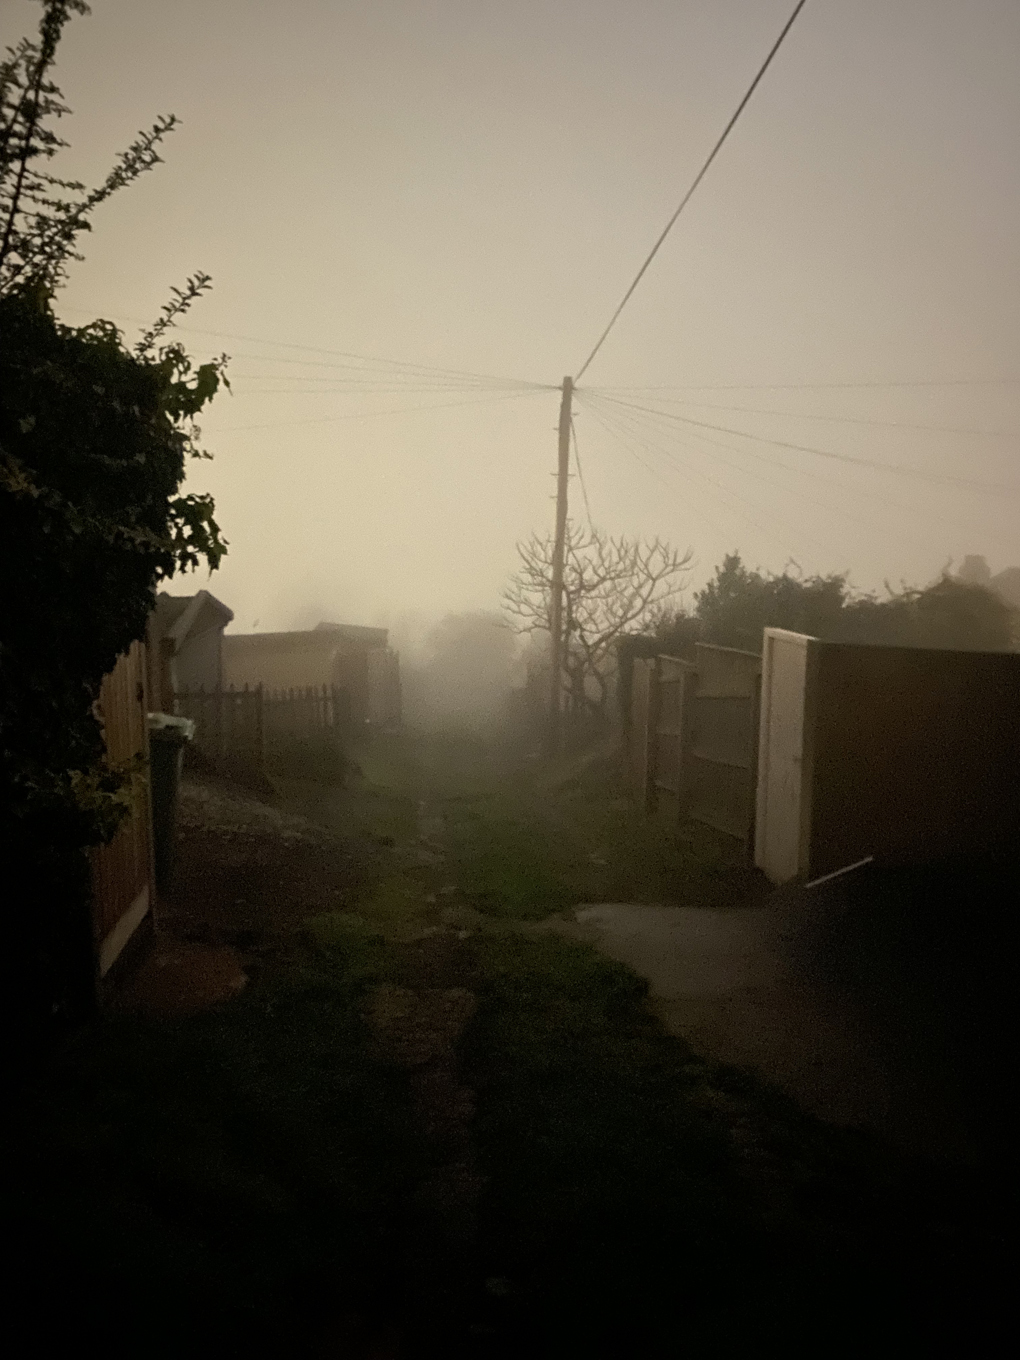 A view down a foggy alley